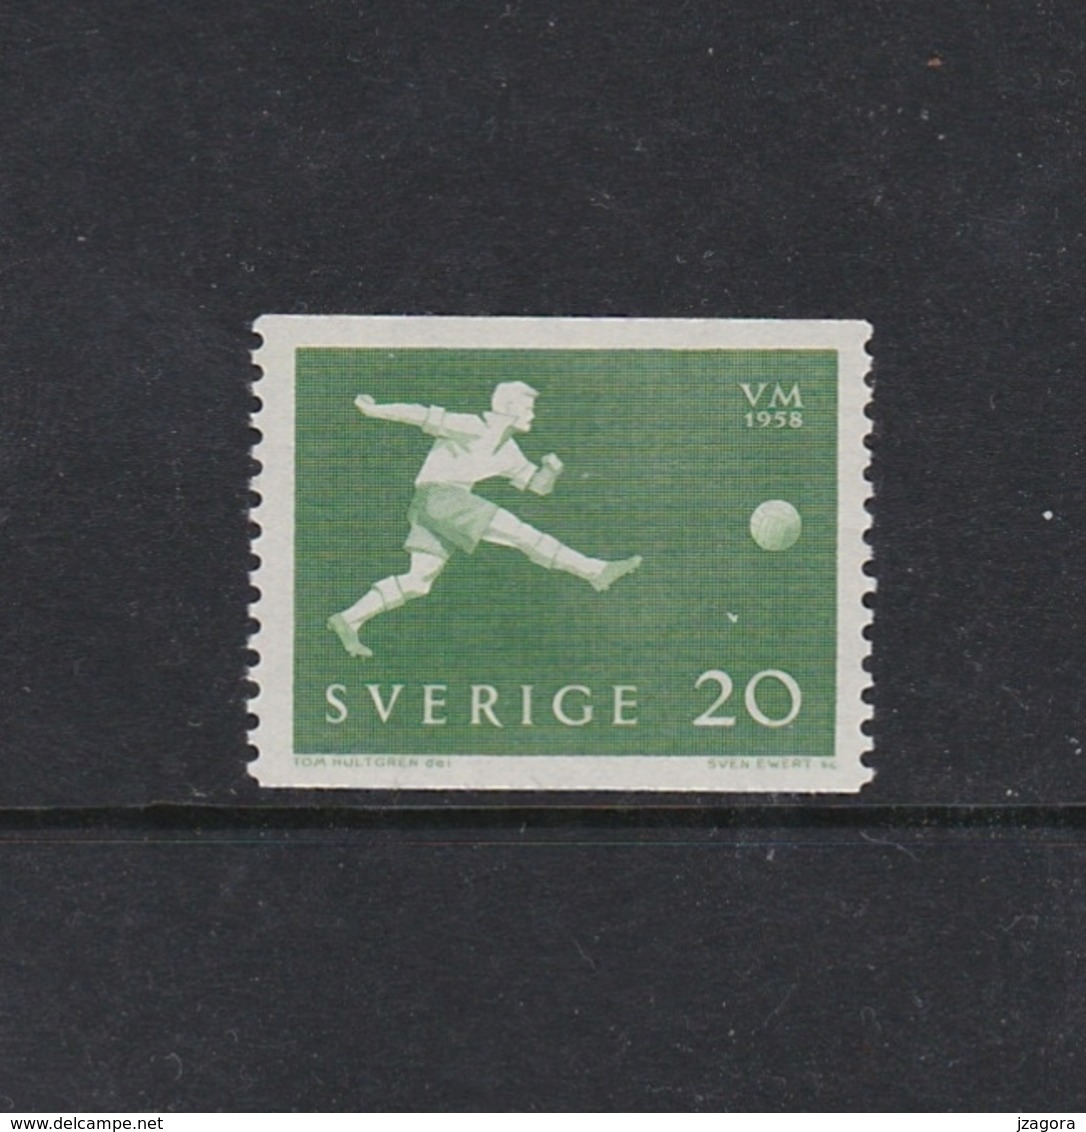 SOCCER FOOTBALL WORLD CHAMPIONSHIP - MUNDIAL 1958 - SWEDEN SCHWEDEN SUEDE MI 439 A MNH - 1958 – Zweden